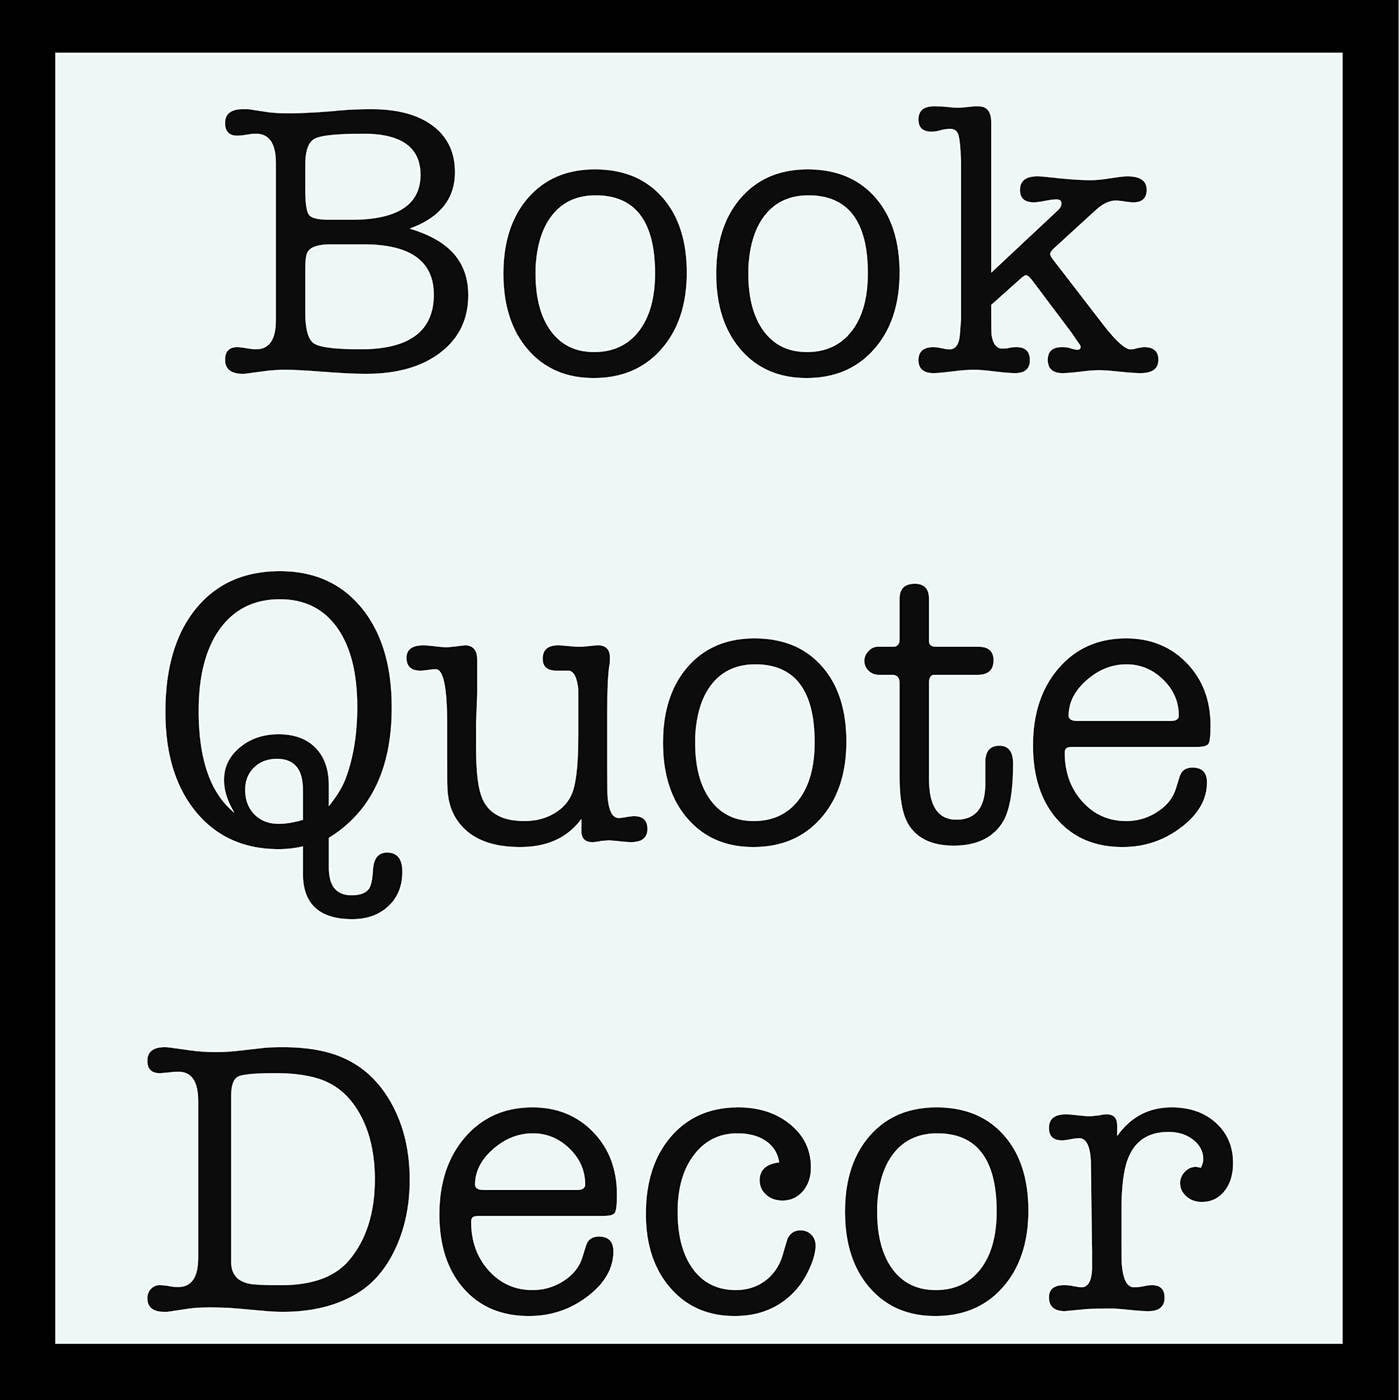 Carlos Ruiz Zafon quote print, black & white art from Book Quote Decor